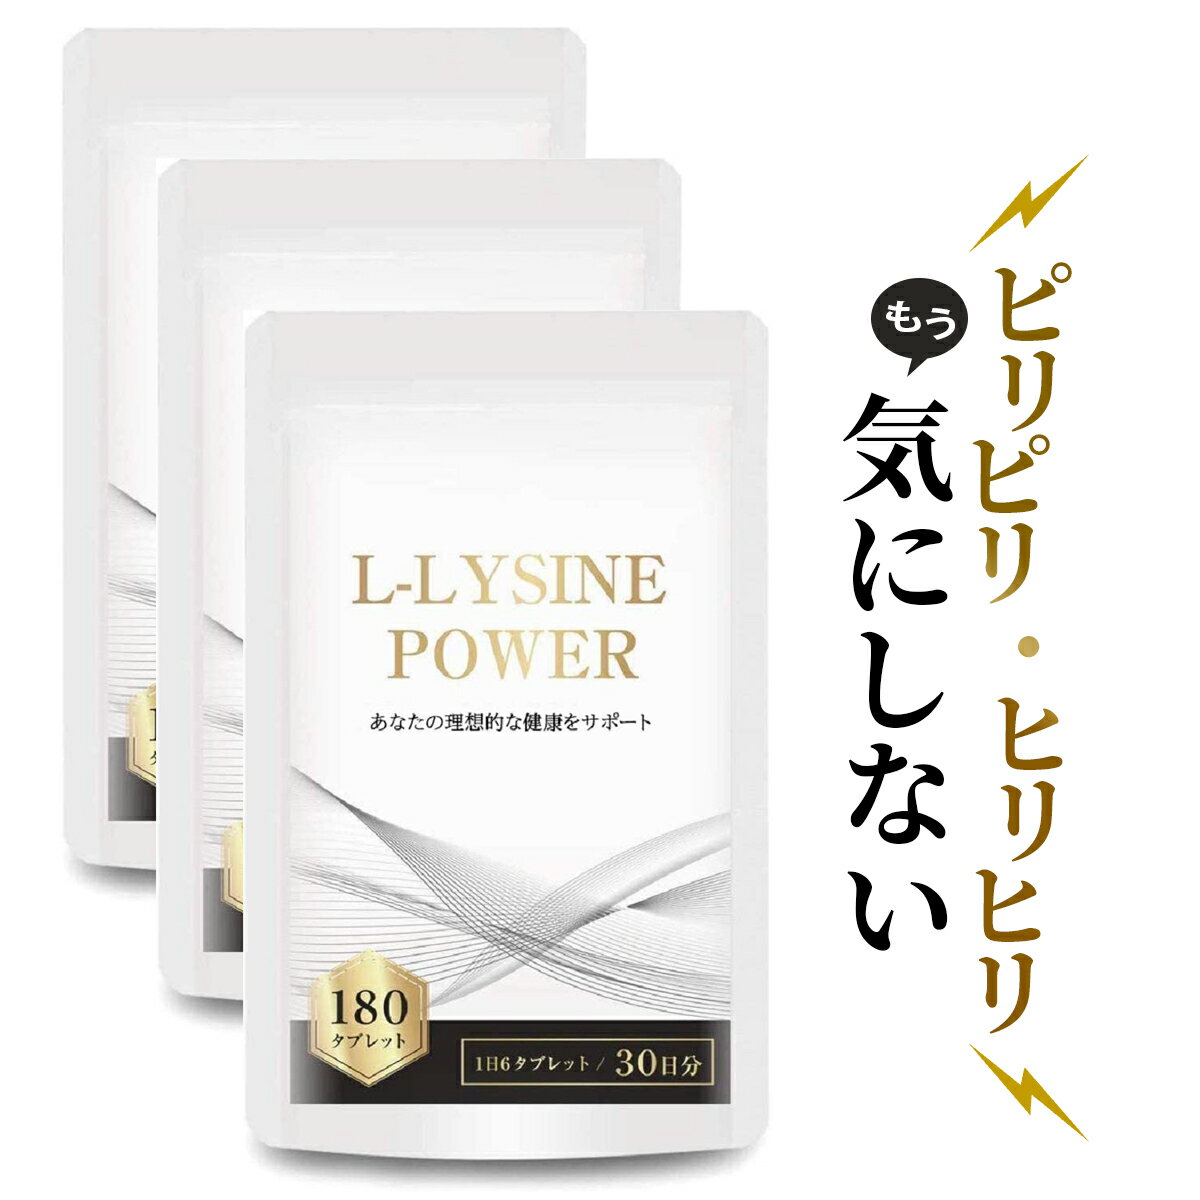 リジン サプリメント アミノ酸 Lリジン1日1500mg配合 国内製 L-LYSINE POWER  ...